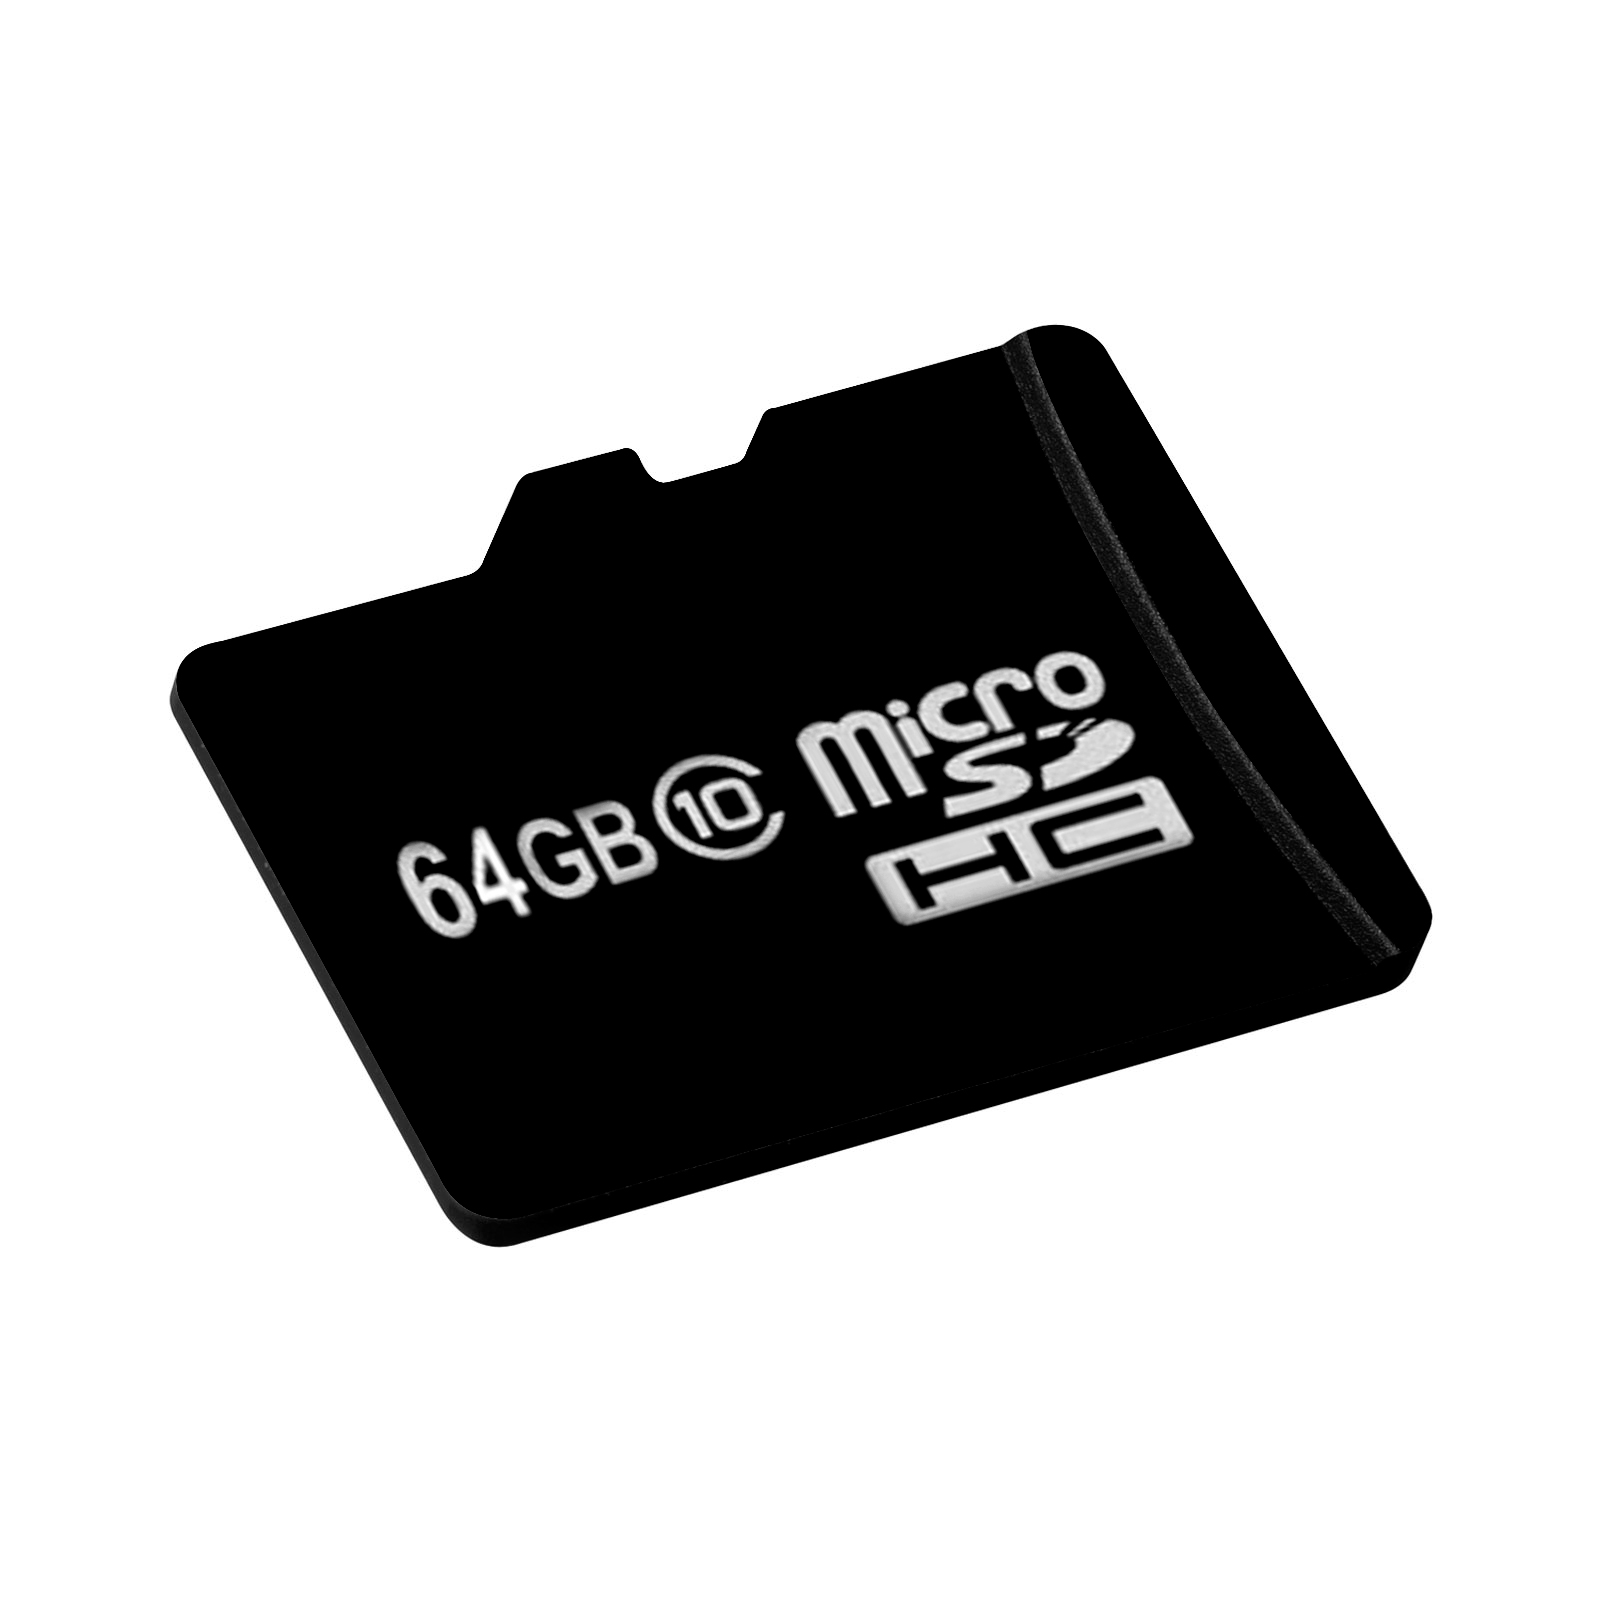 Carte mémoire micro SD 64GO HORIZONT